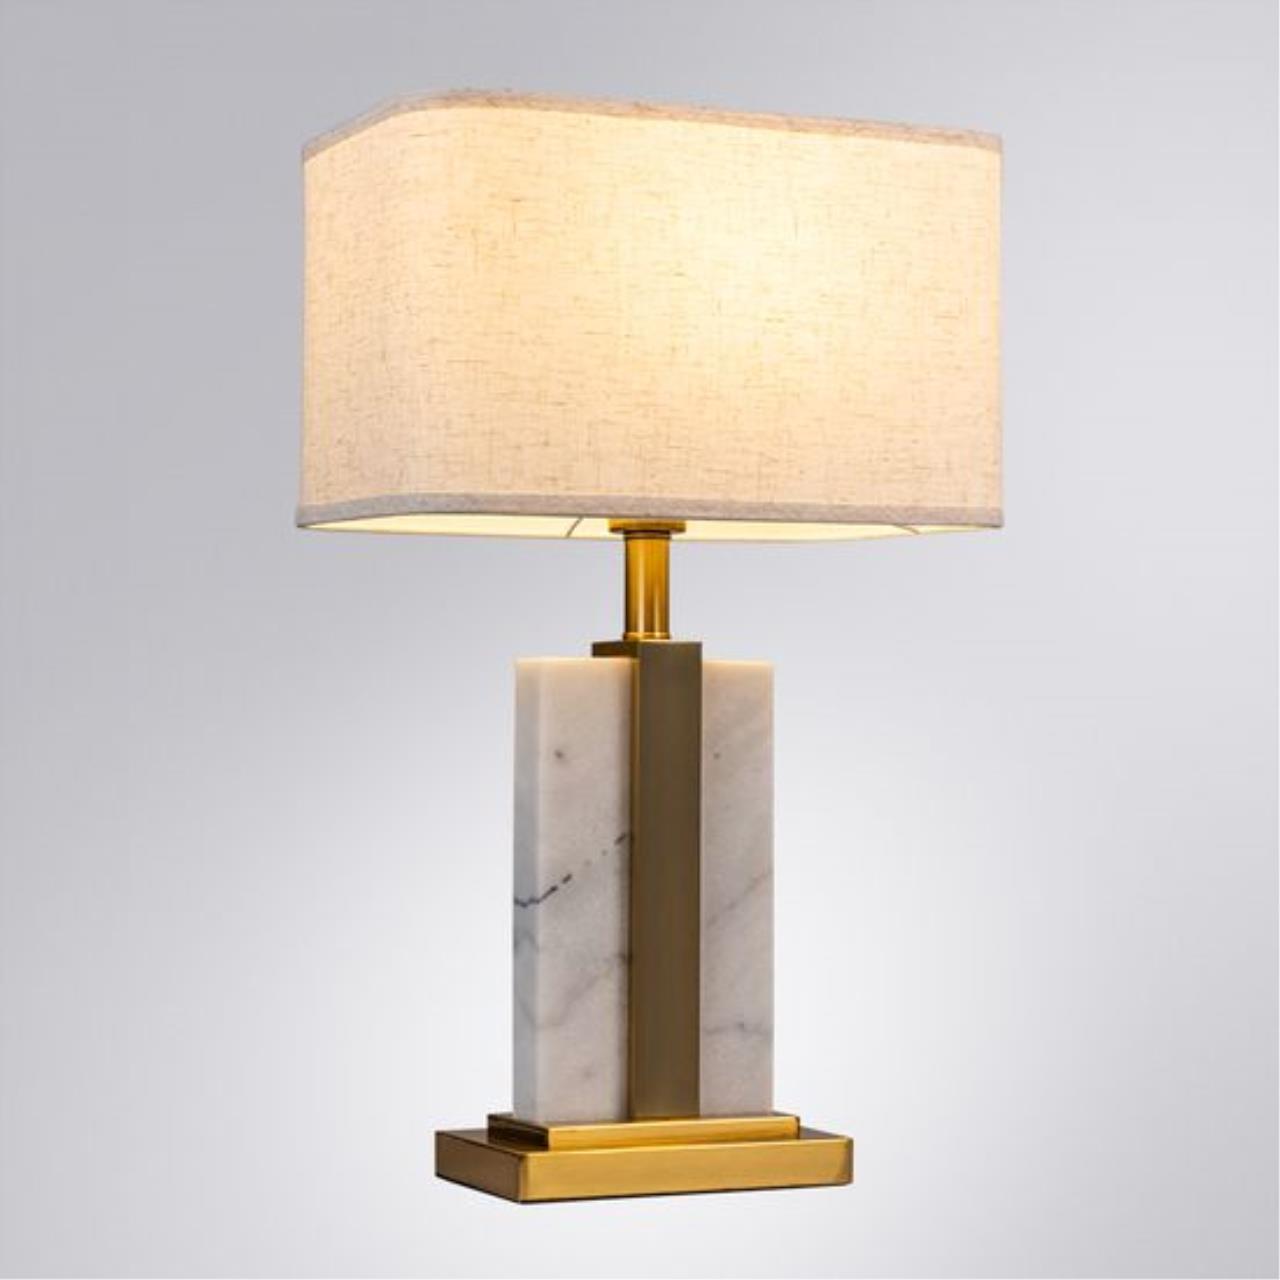 Интерьерная настольная лампа Arte lamp A5055LT-1PB